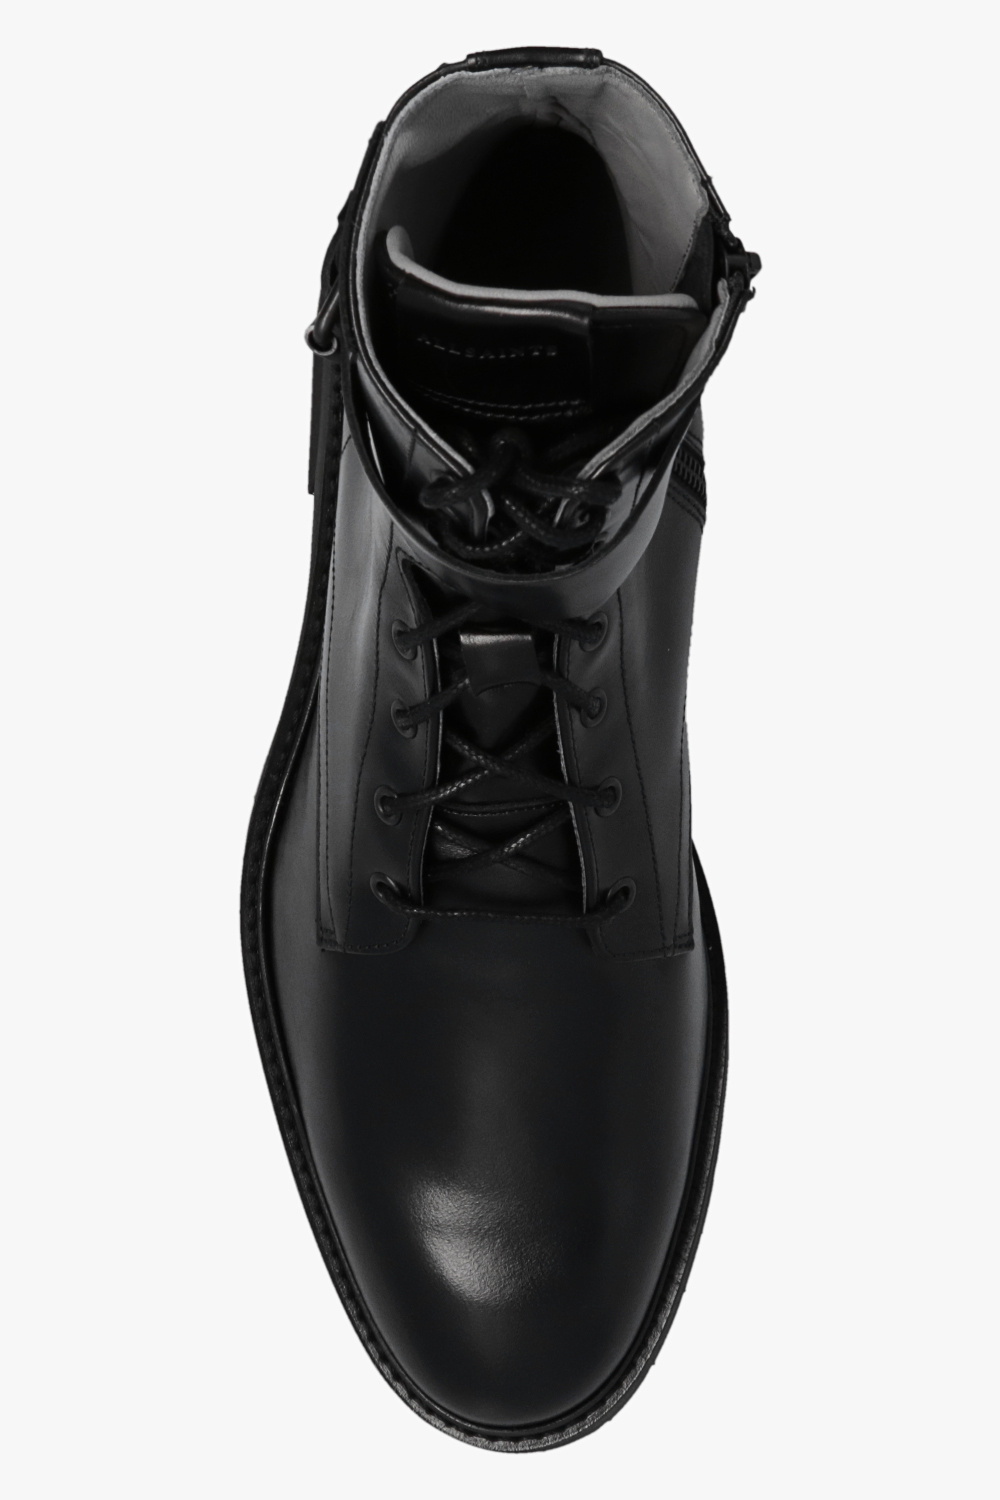 AllSaints ‘Porter’ ankle boots